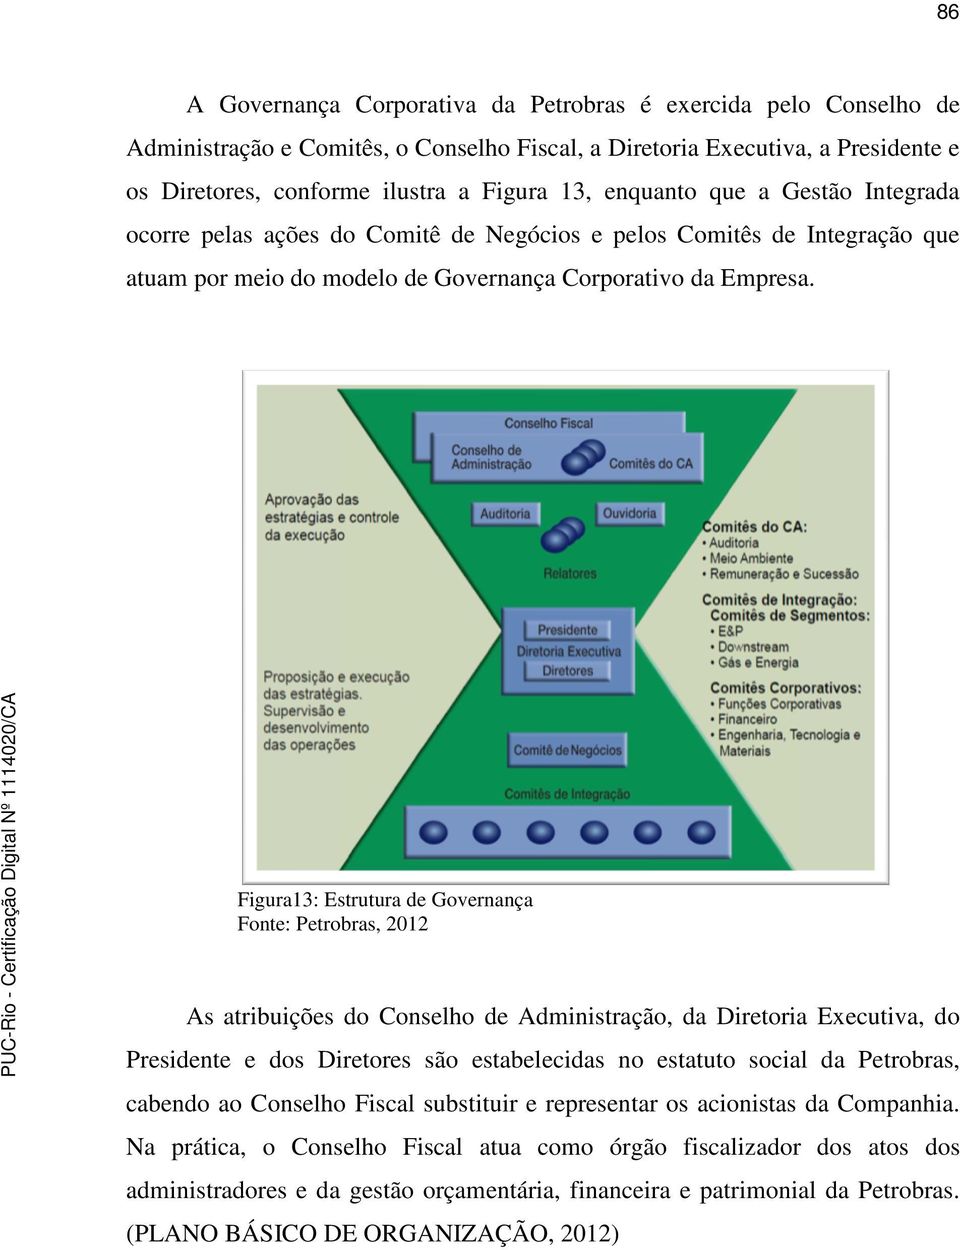 Figura13: Estrutura de Governança Fonte: Petrobras, 2012 As atribuições do Conselho de Administração, da Diretoria Executiva, do Presidente e dos Diretores são estabelecidas no estatuto social da